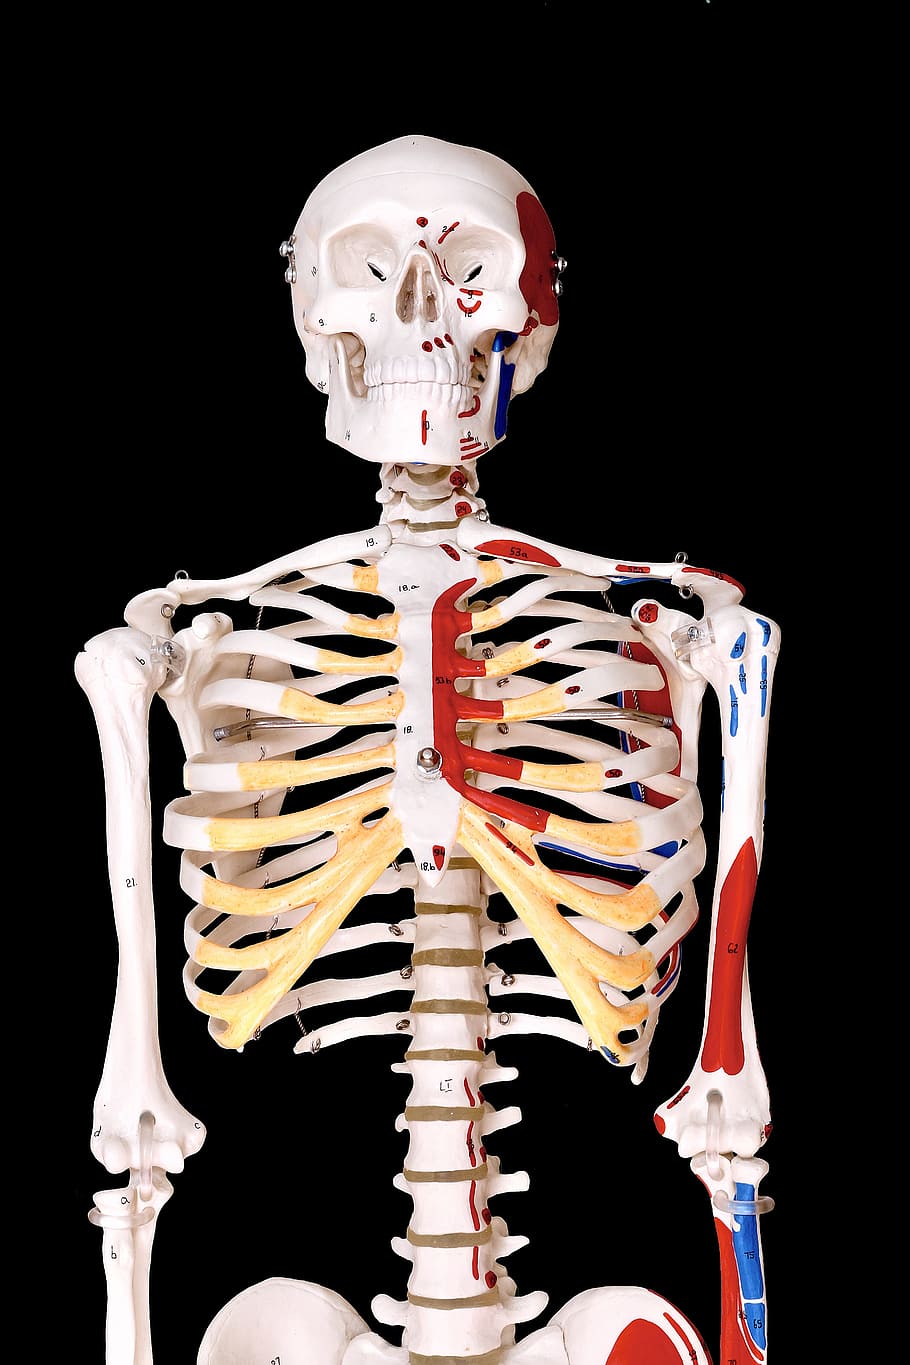 kerangka, manusia, model, fisio, anatomi, tulang, kerangka manusia, tulang manusia, latar belakang hitam, bagian tubuh manusia